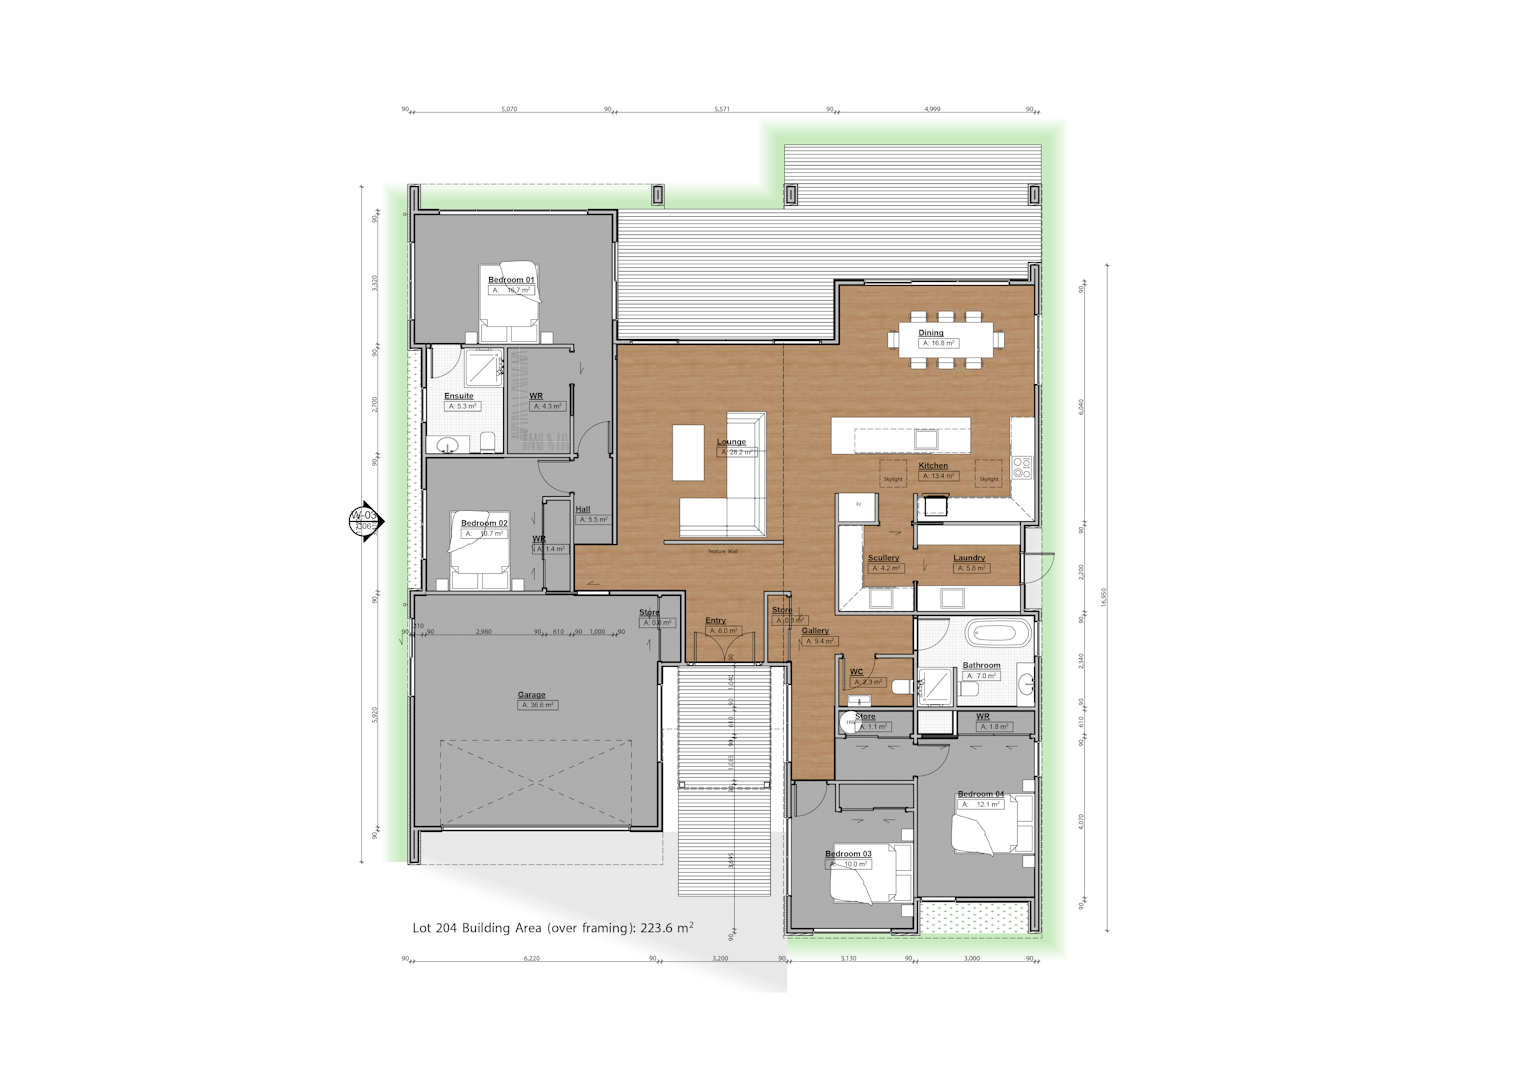 Lot 204 - Harbour Ridge, Omokoroa floor plan